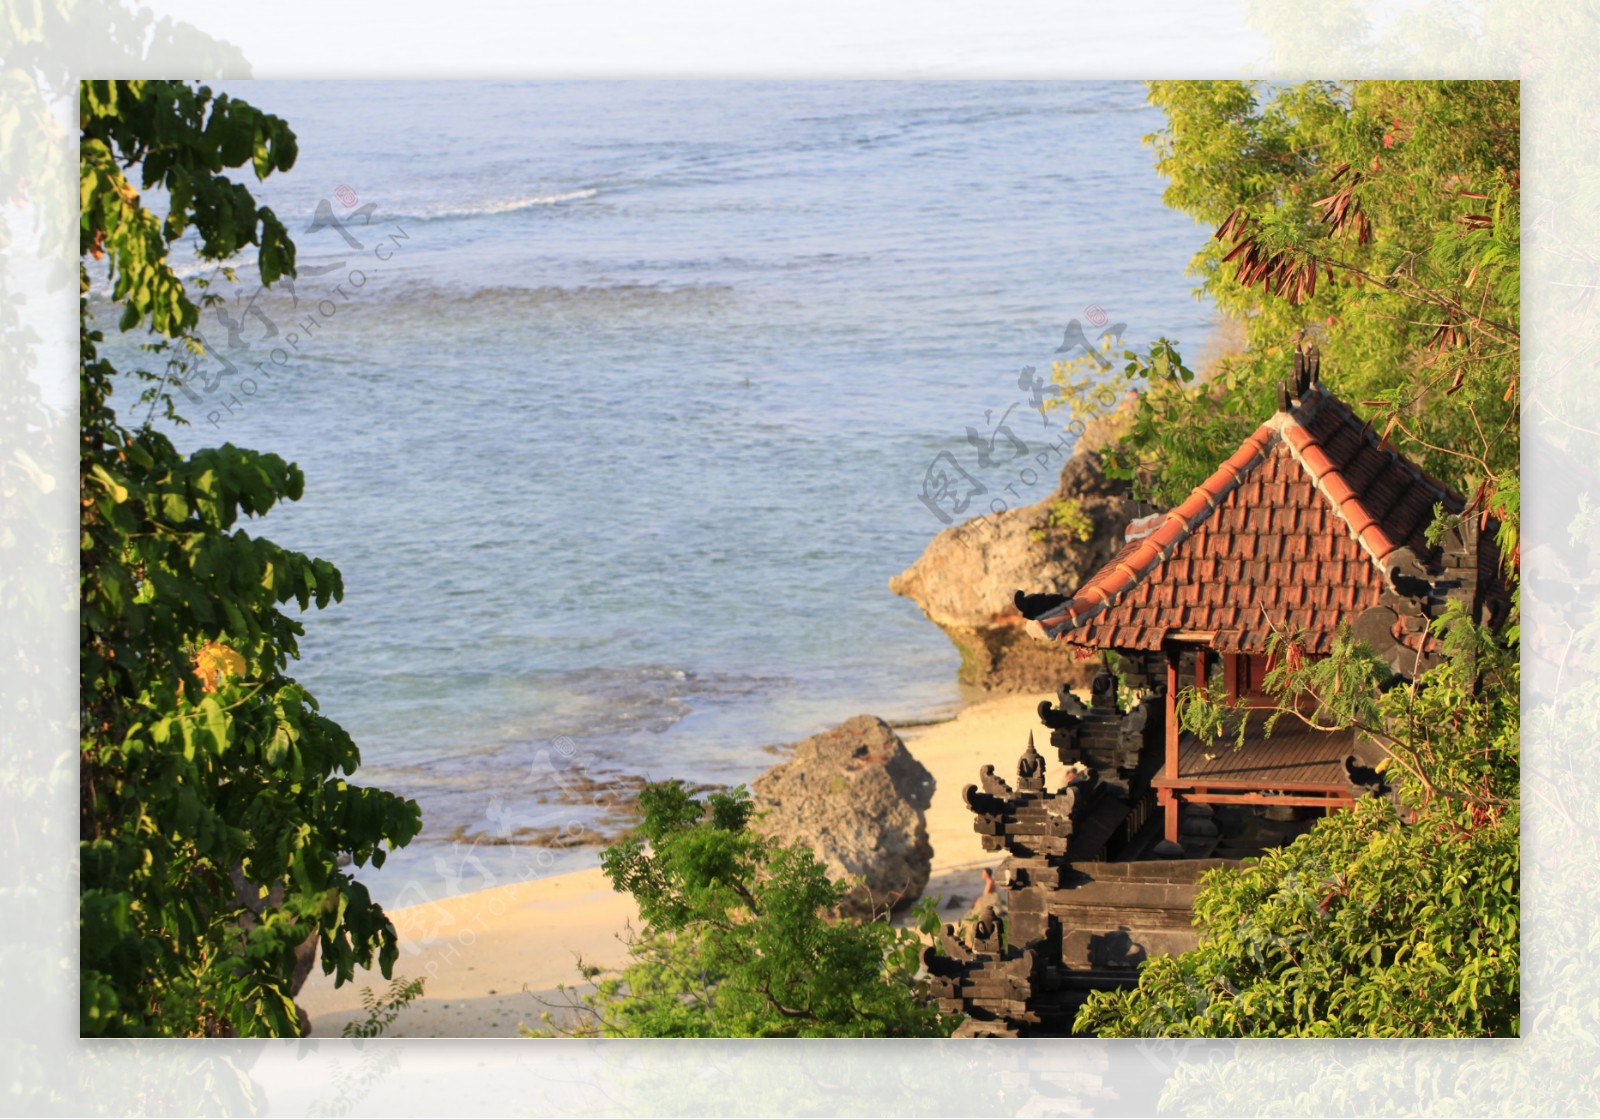 巴厘岛海滩风景图片